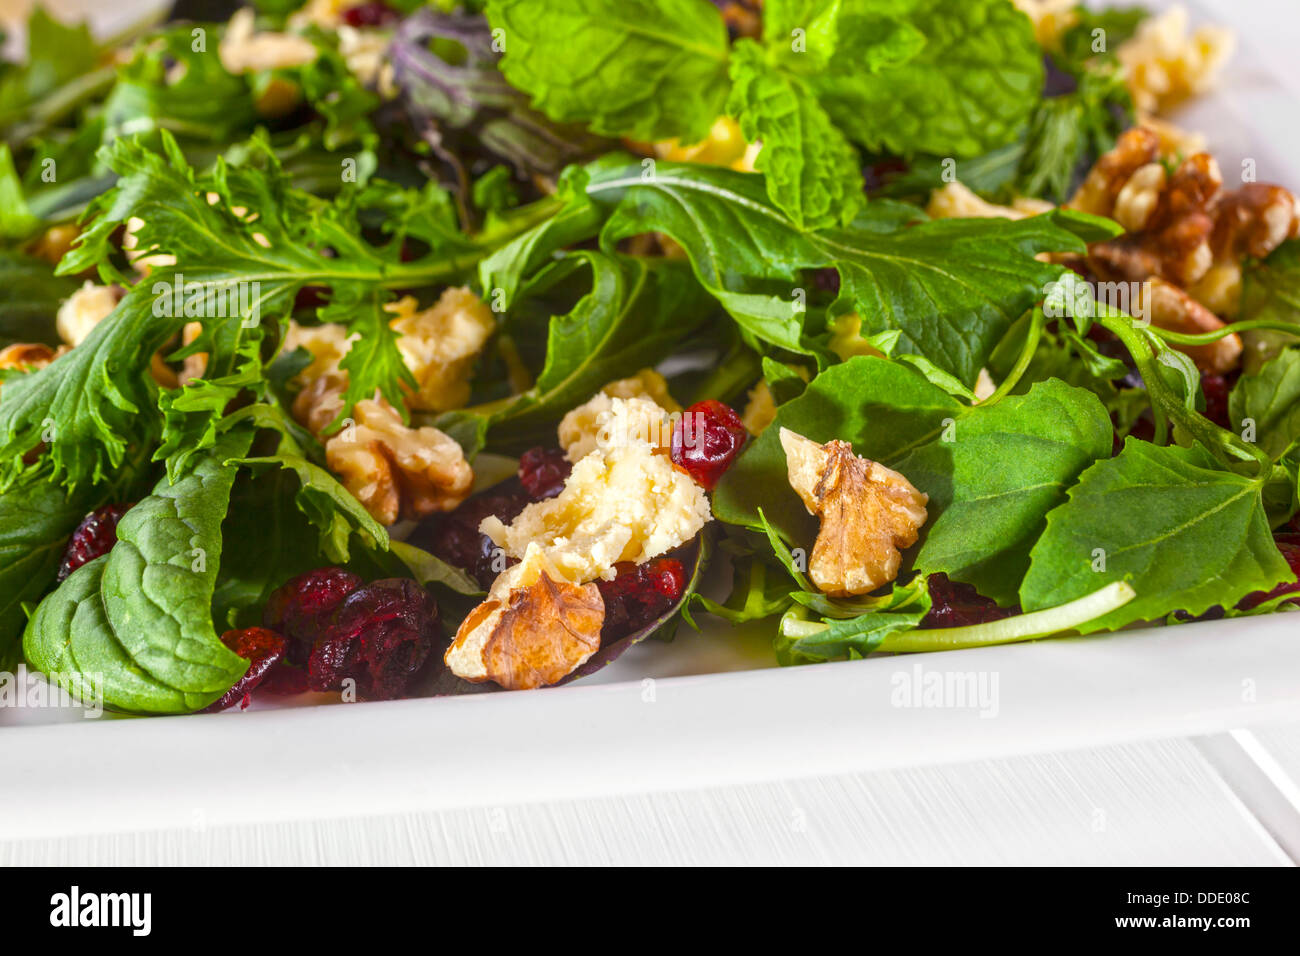 Salade de Feta Canneberges et noix - un savoureux traiter faible en calories, feta, noix et canneberges salade, avec une vinaigrette à la moutarde de Dijon. Banque D'Images